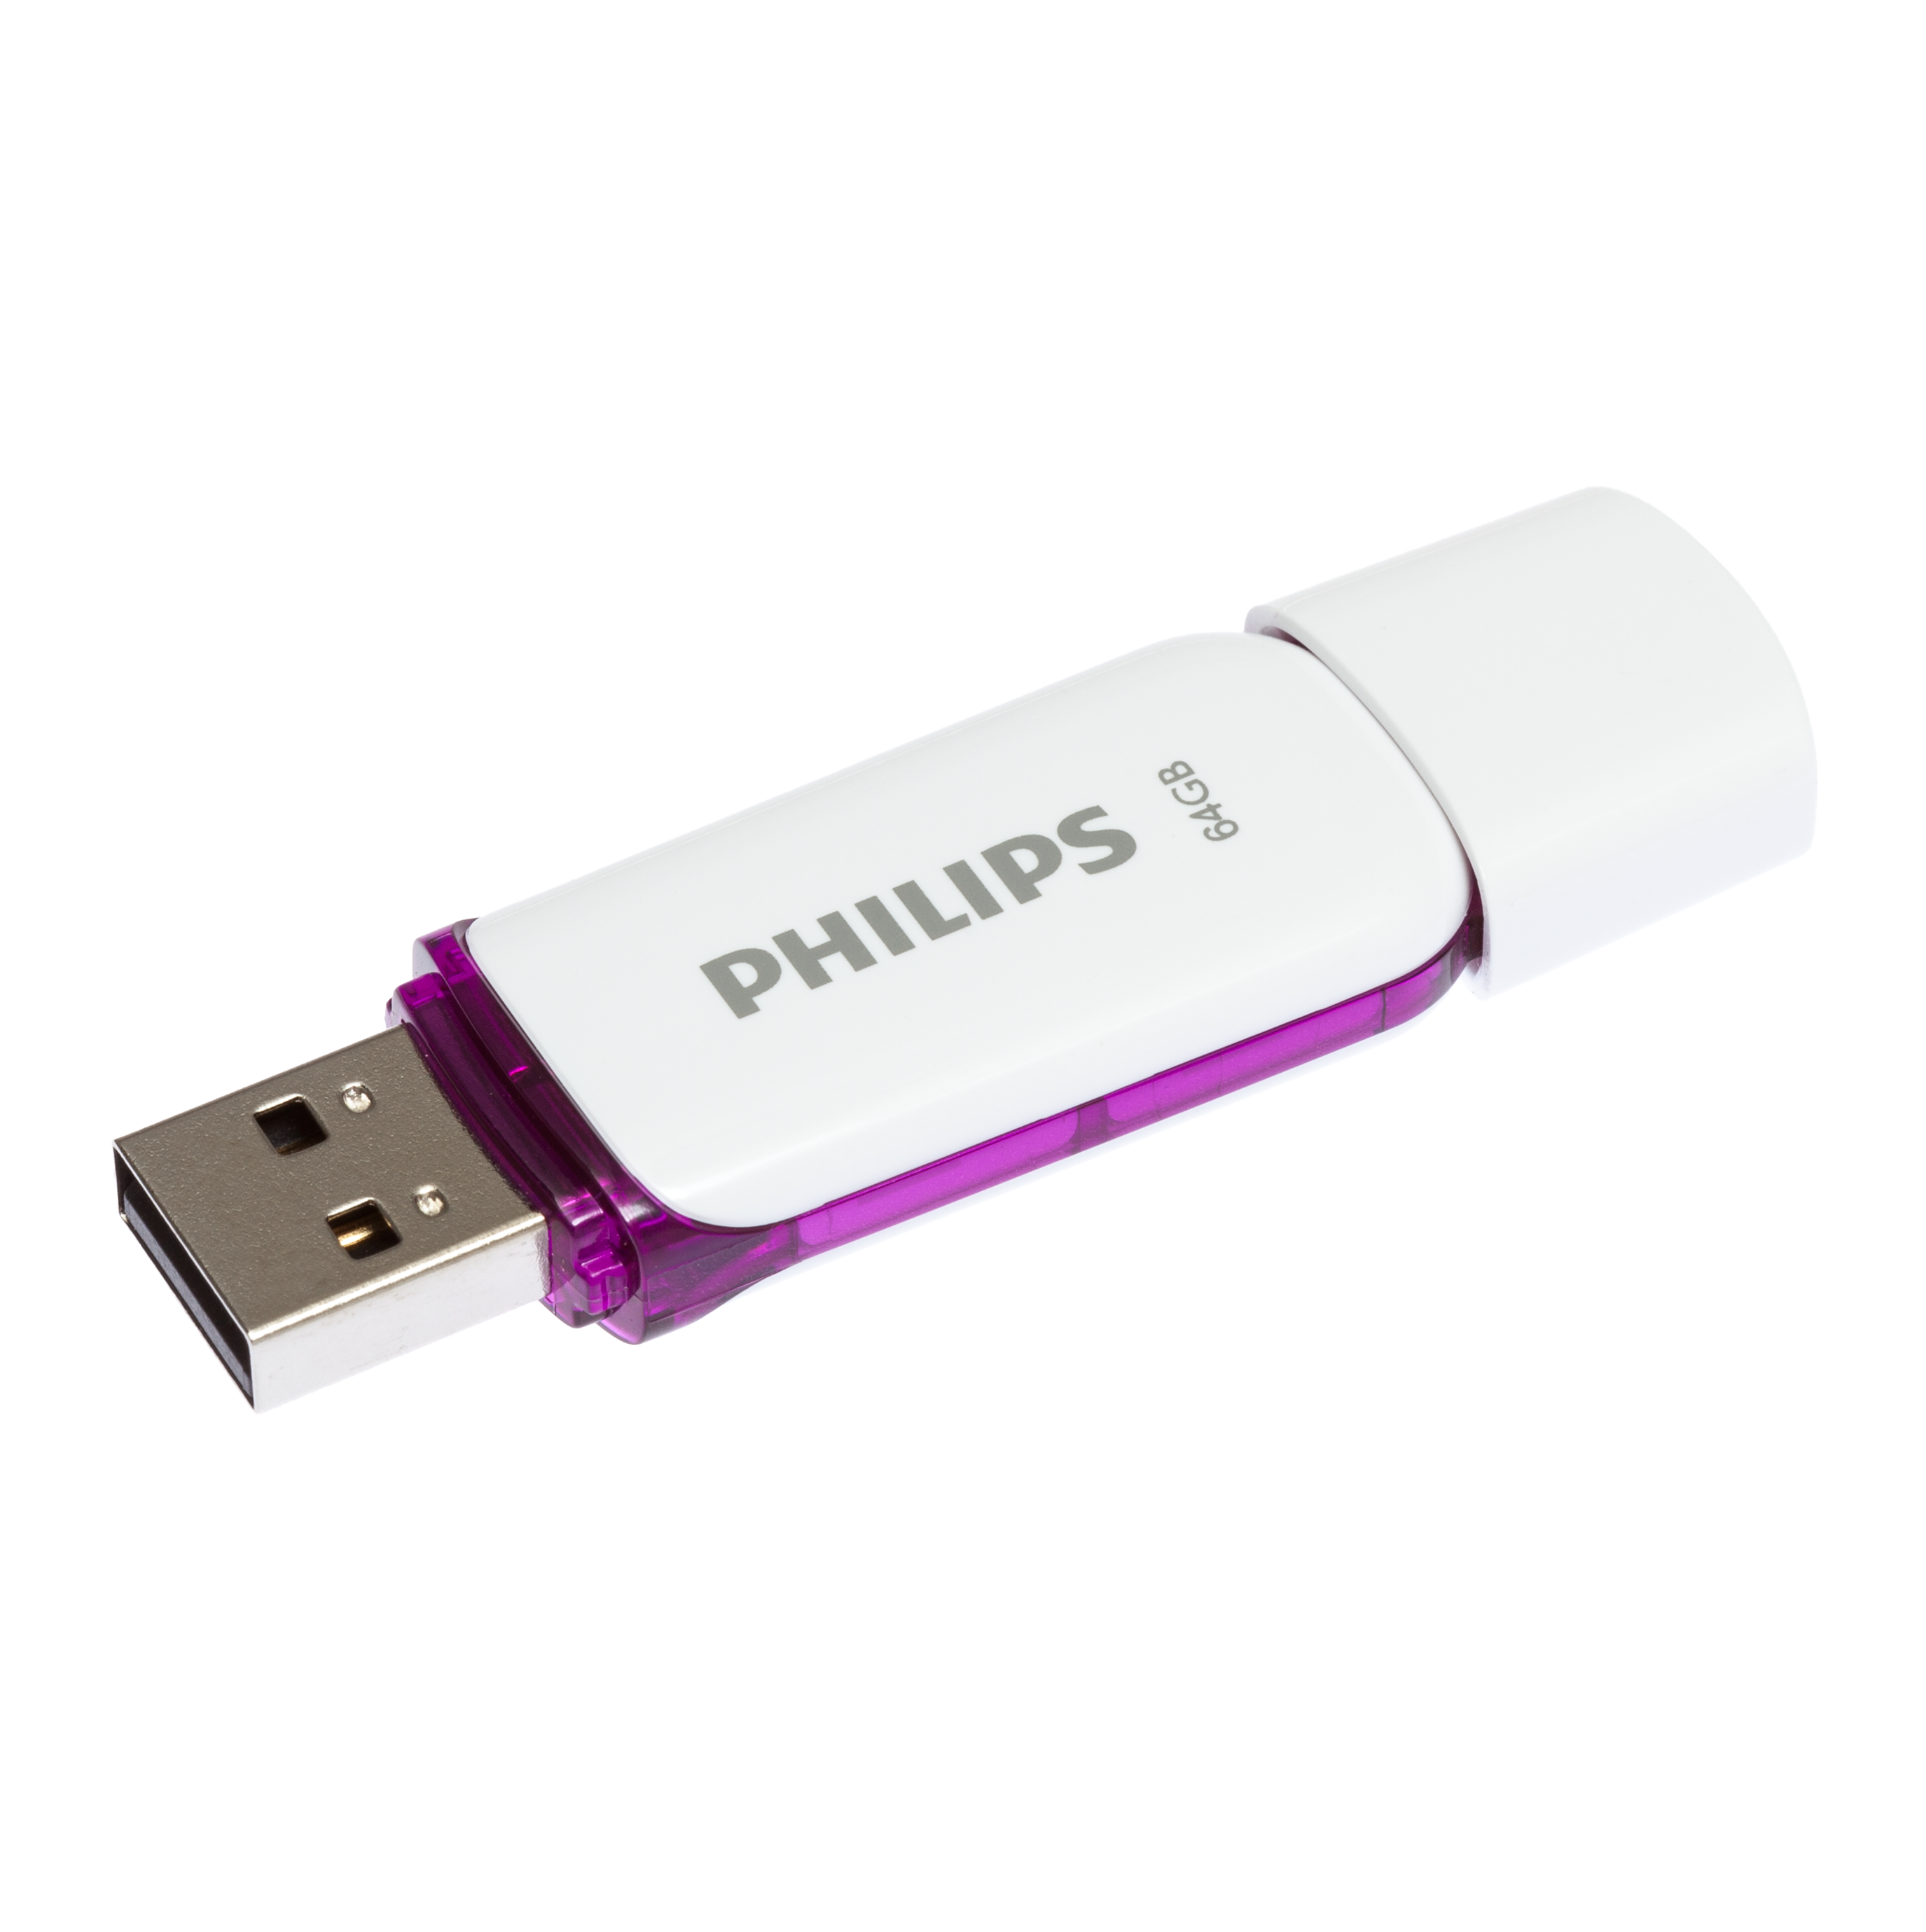 PHILIPS Snow GB) 25 Edition Purple®, (Weiß, 64GB Magic weiss USB-Stick 64 MB/s